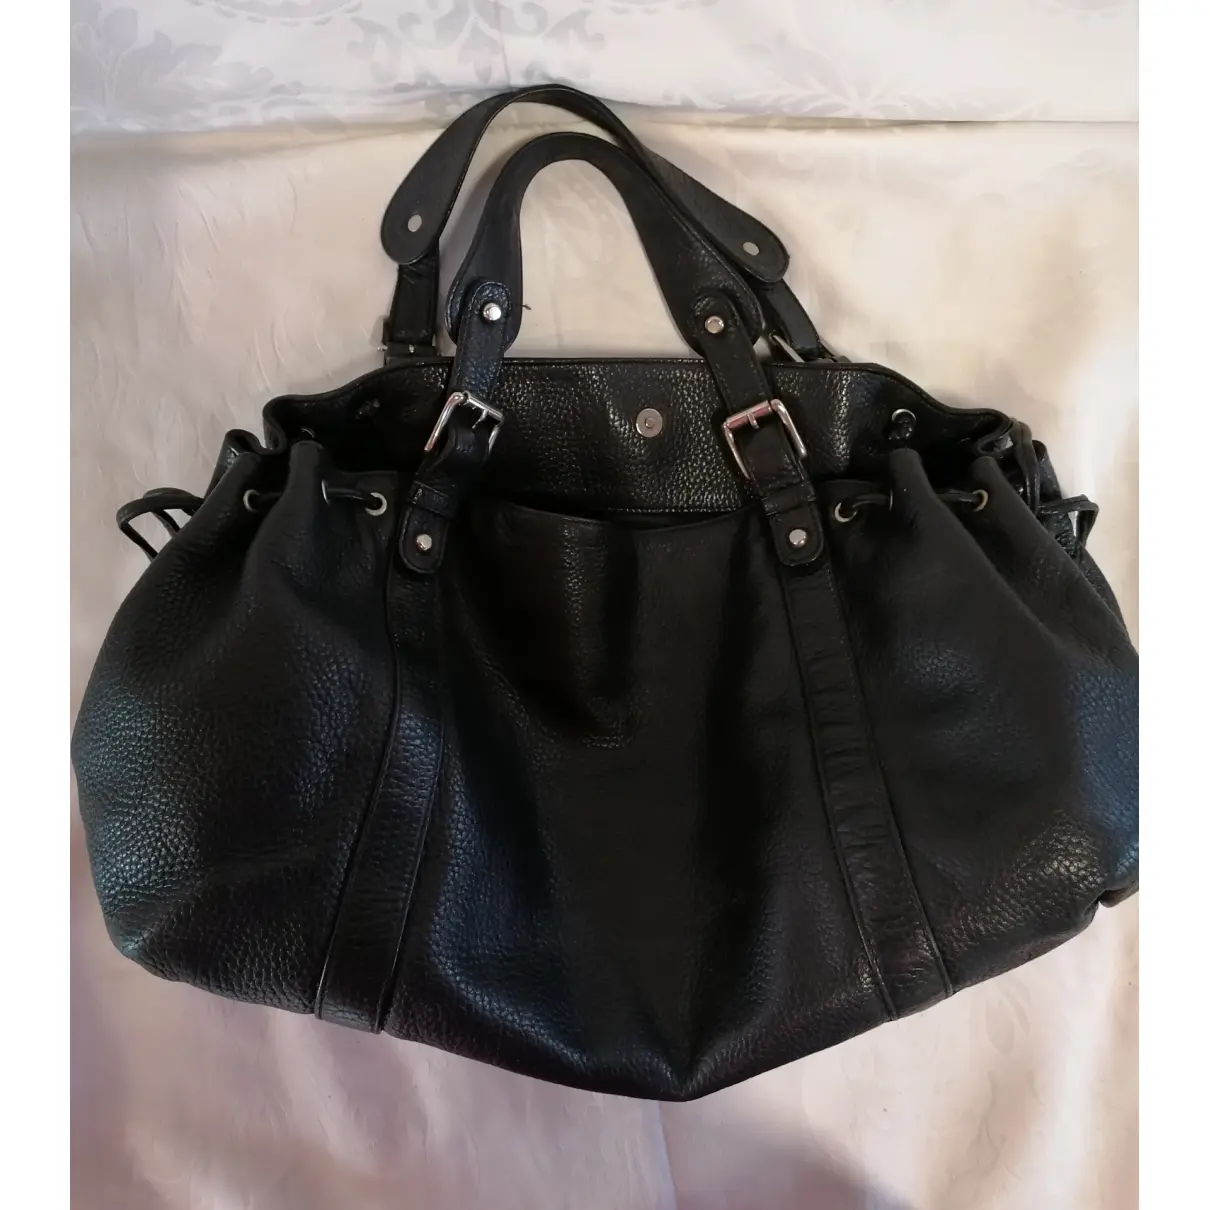 Buy Jil Sander Hill leather handbag online